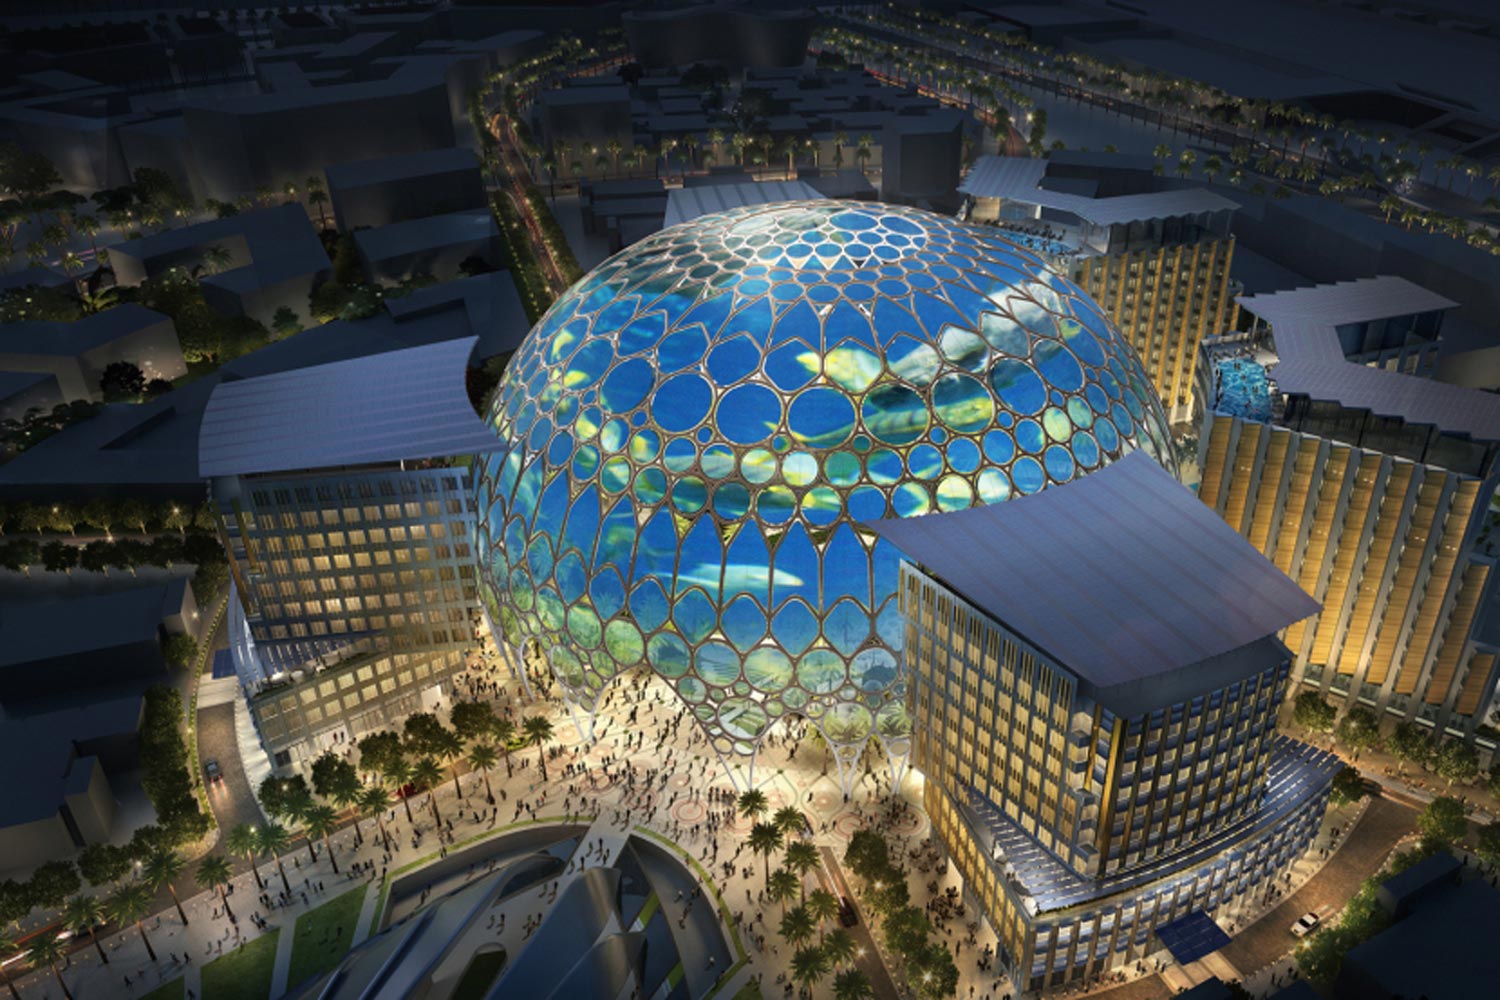 نمایشگاه اکسپو 2020 دبی